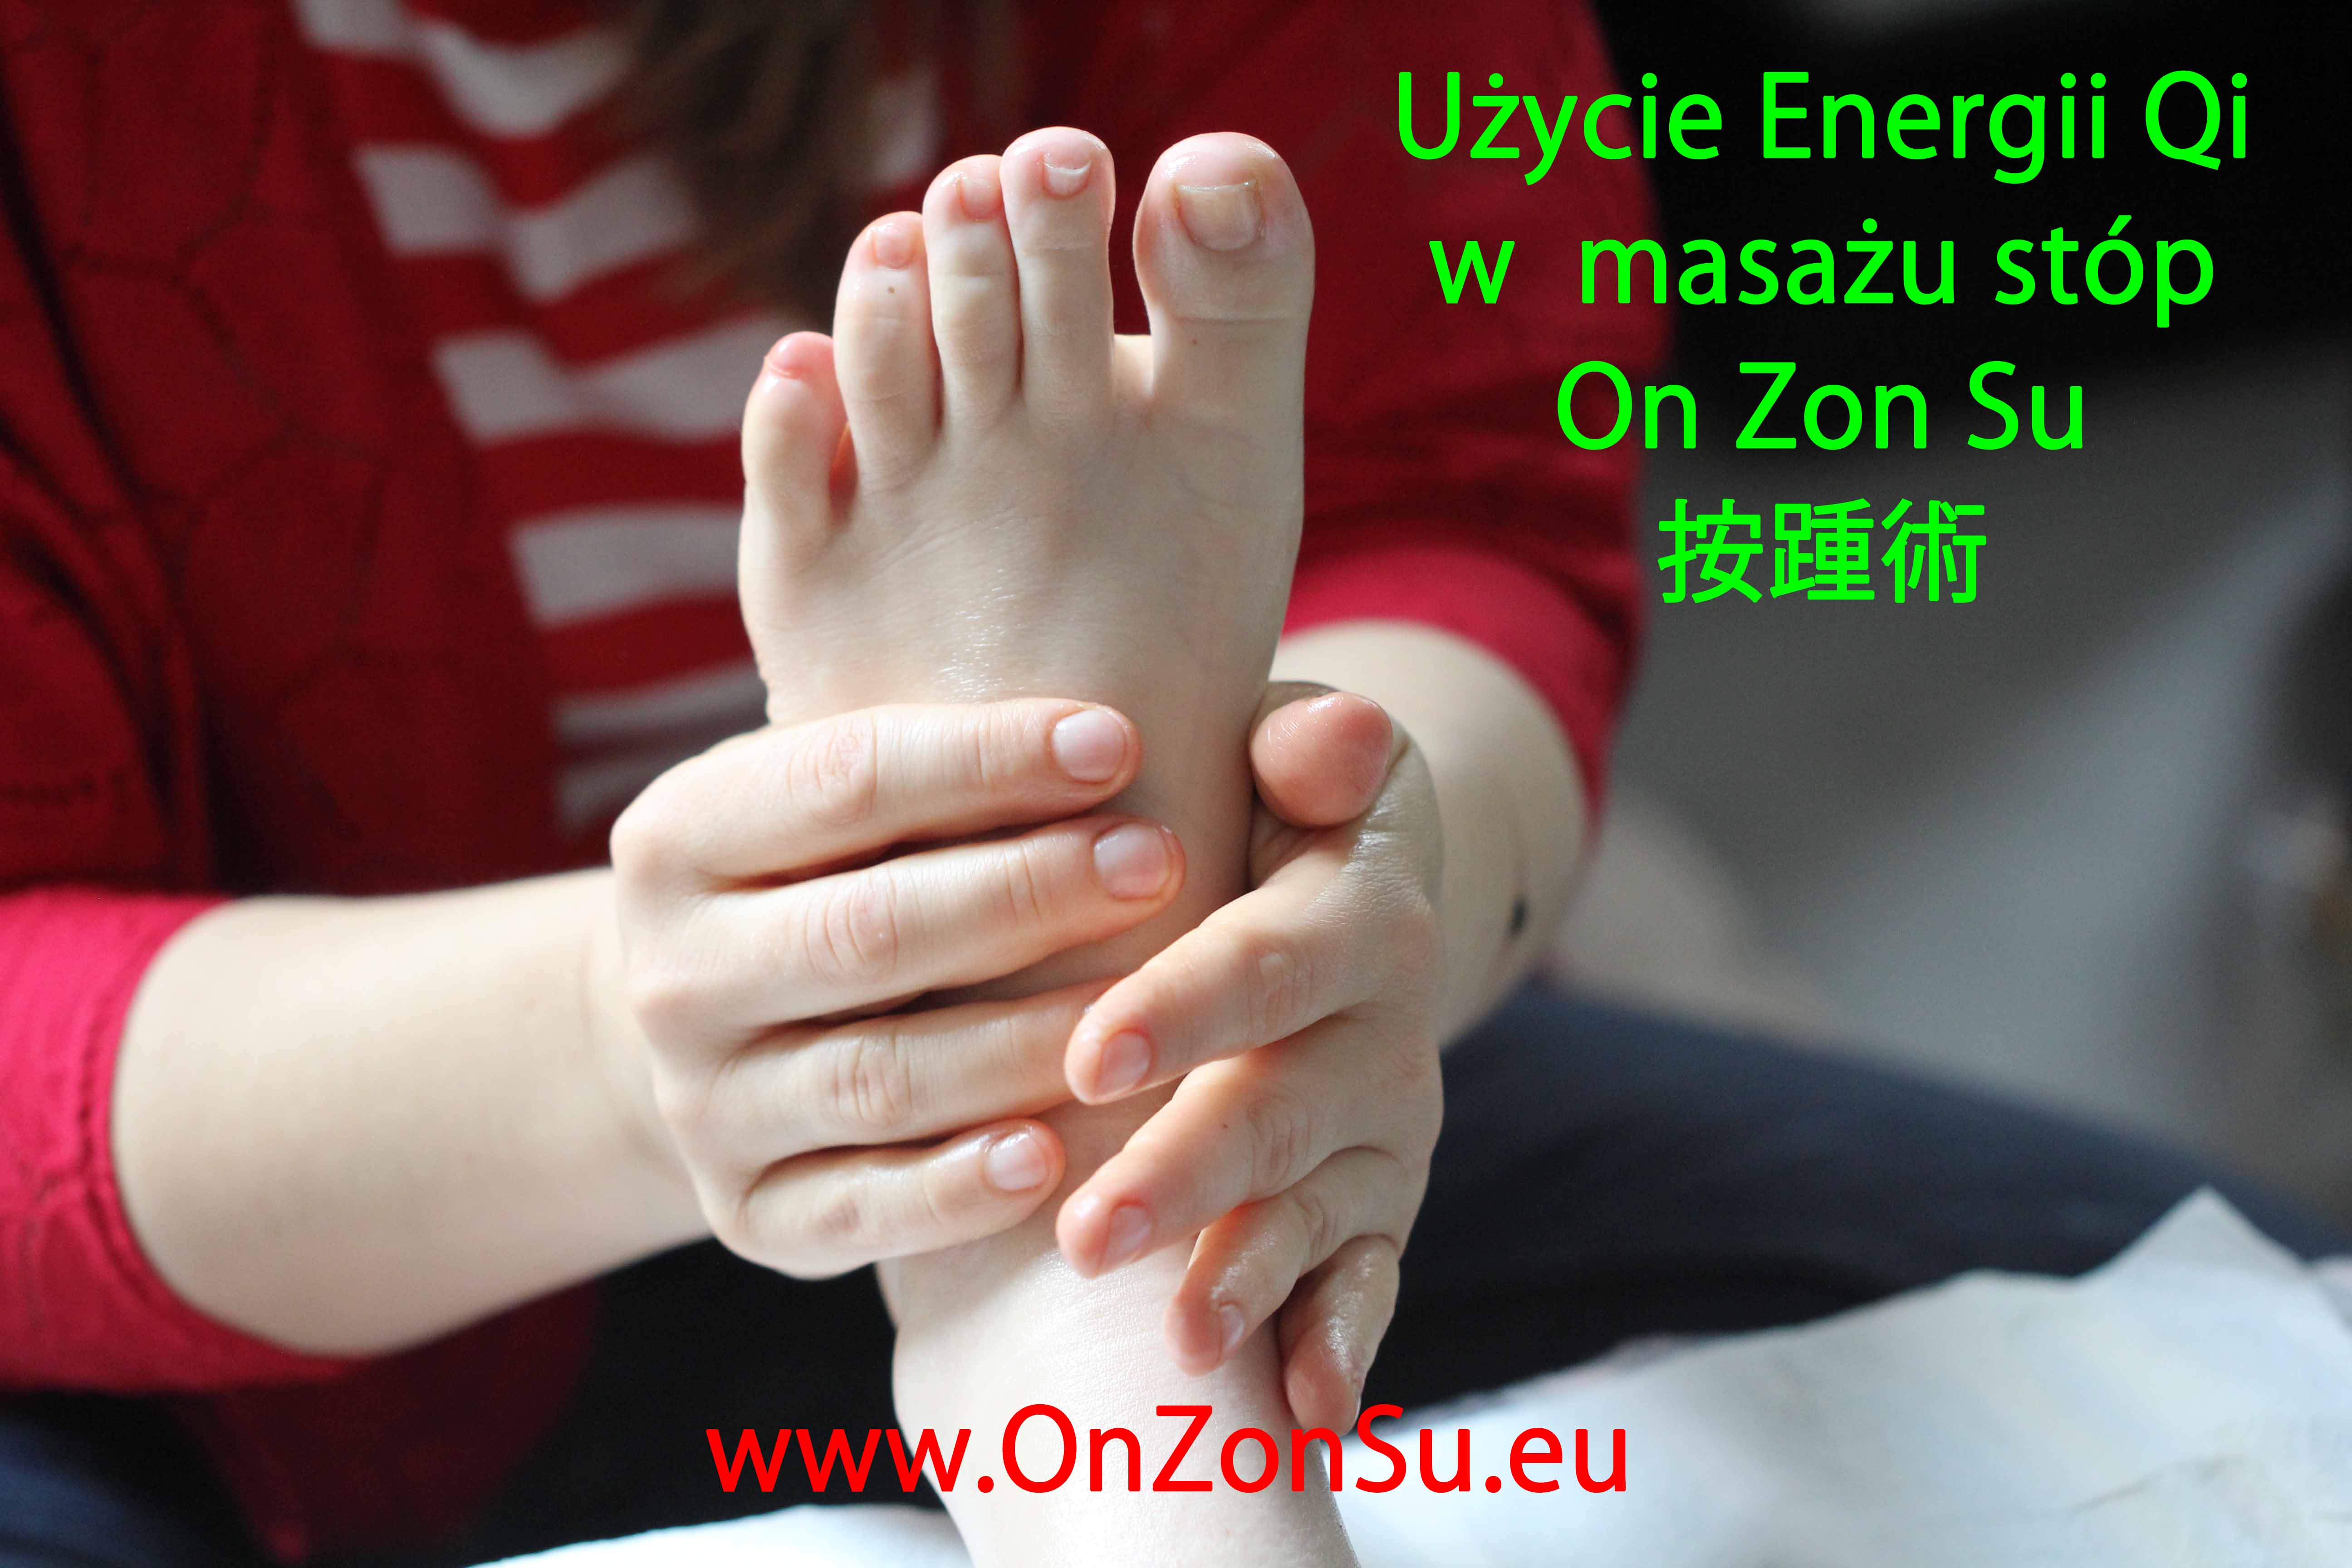 Kurs masażu stóp On Zon Su, Szkolenia refleksologii stóp - Użycie Energii Qi w masażu stóp On Zon Su 按踵術 IMG_5393_mem.jpg